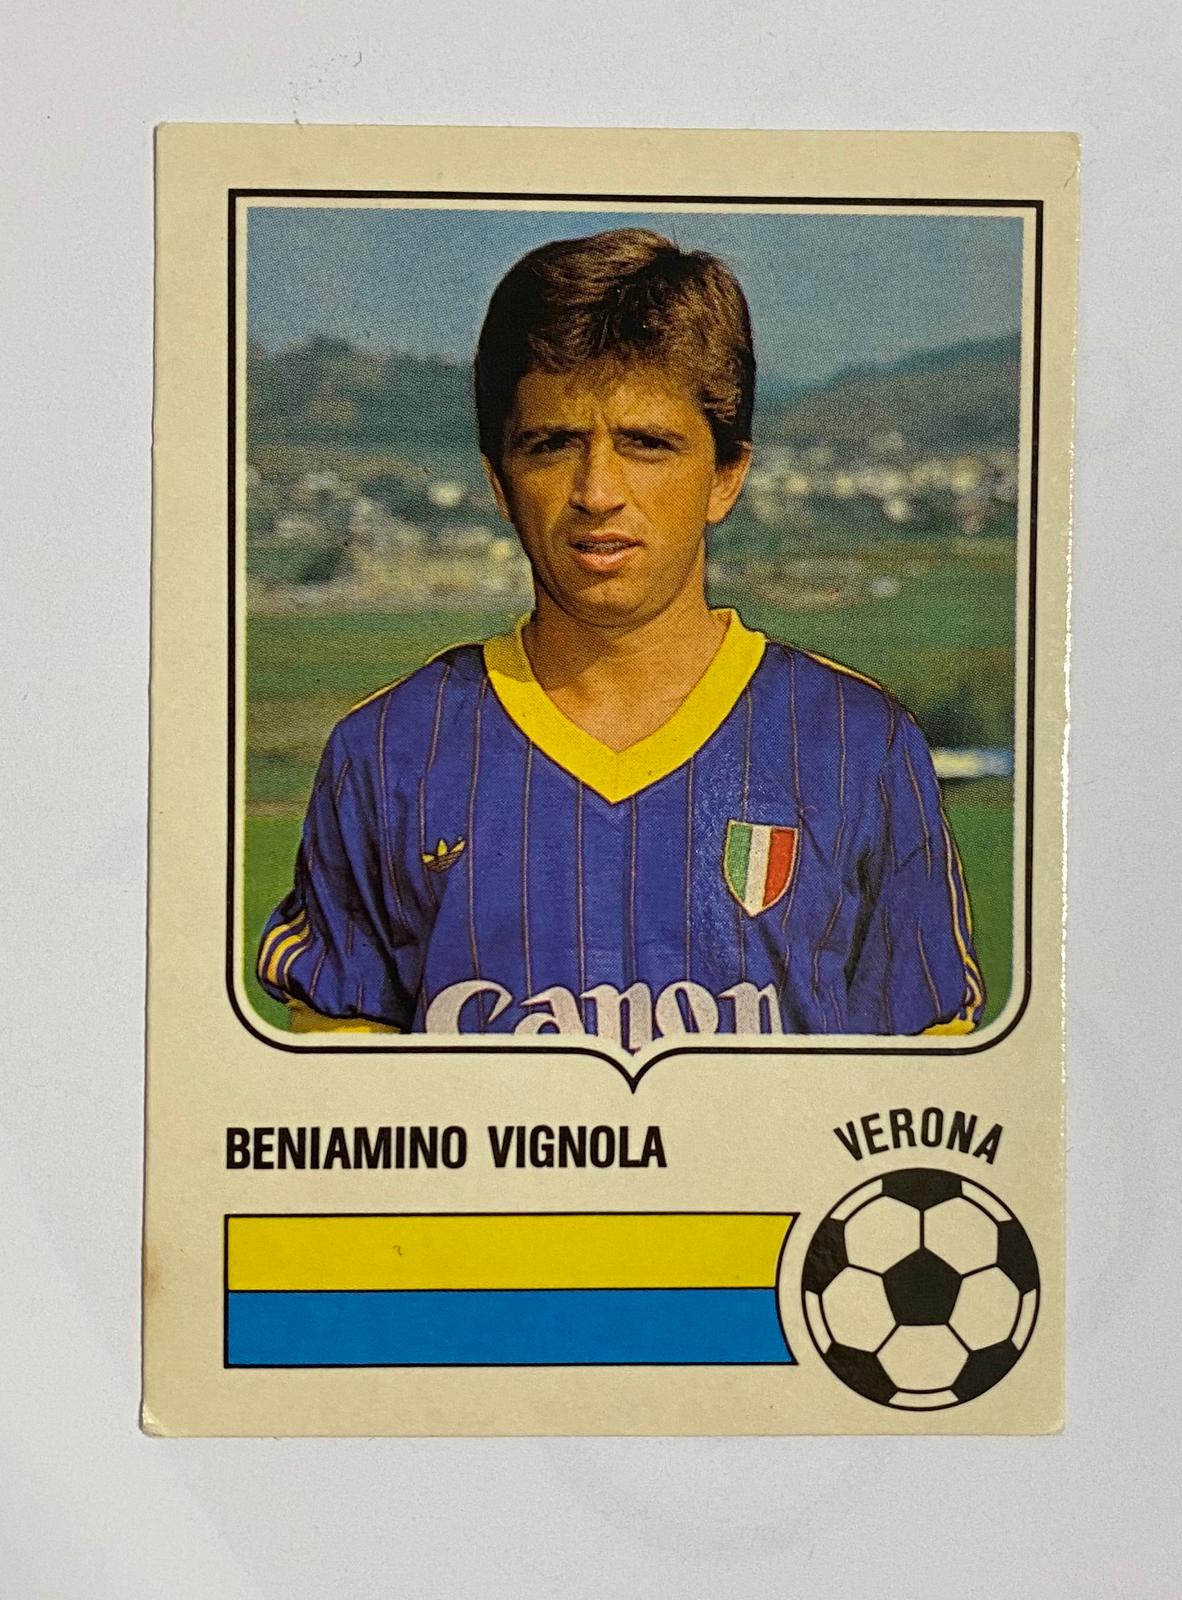 Beniamino Vignola Verona Figurine Card Forza Goal 1985 - 1986 Excellent